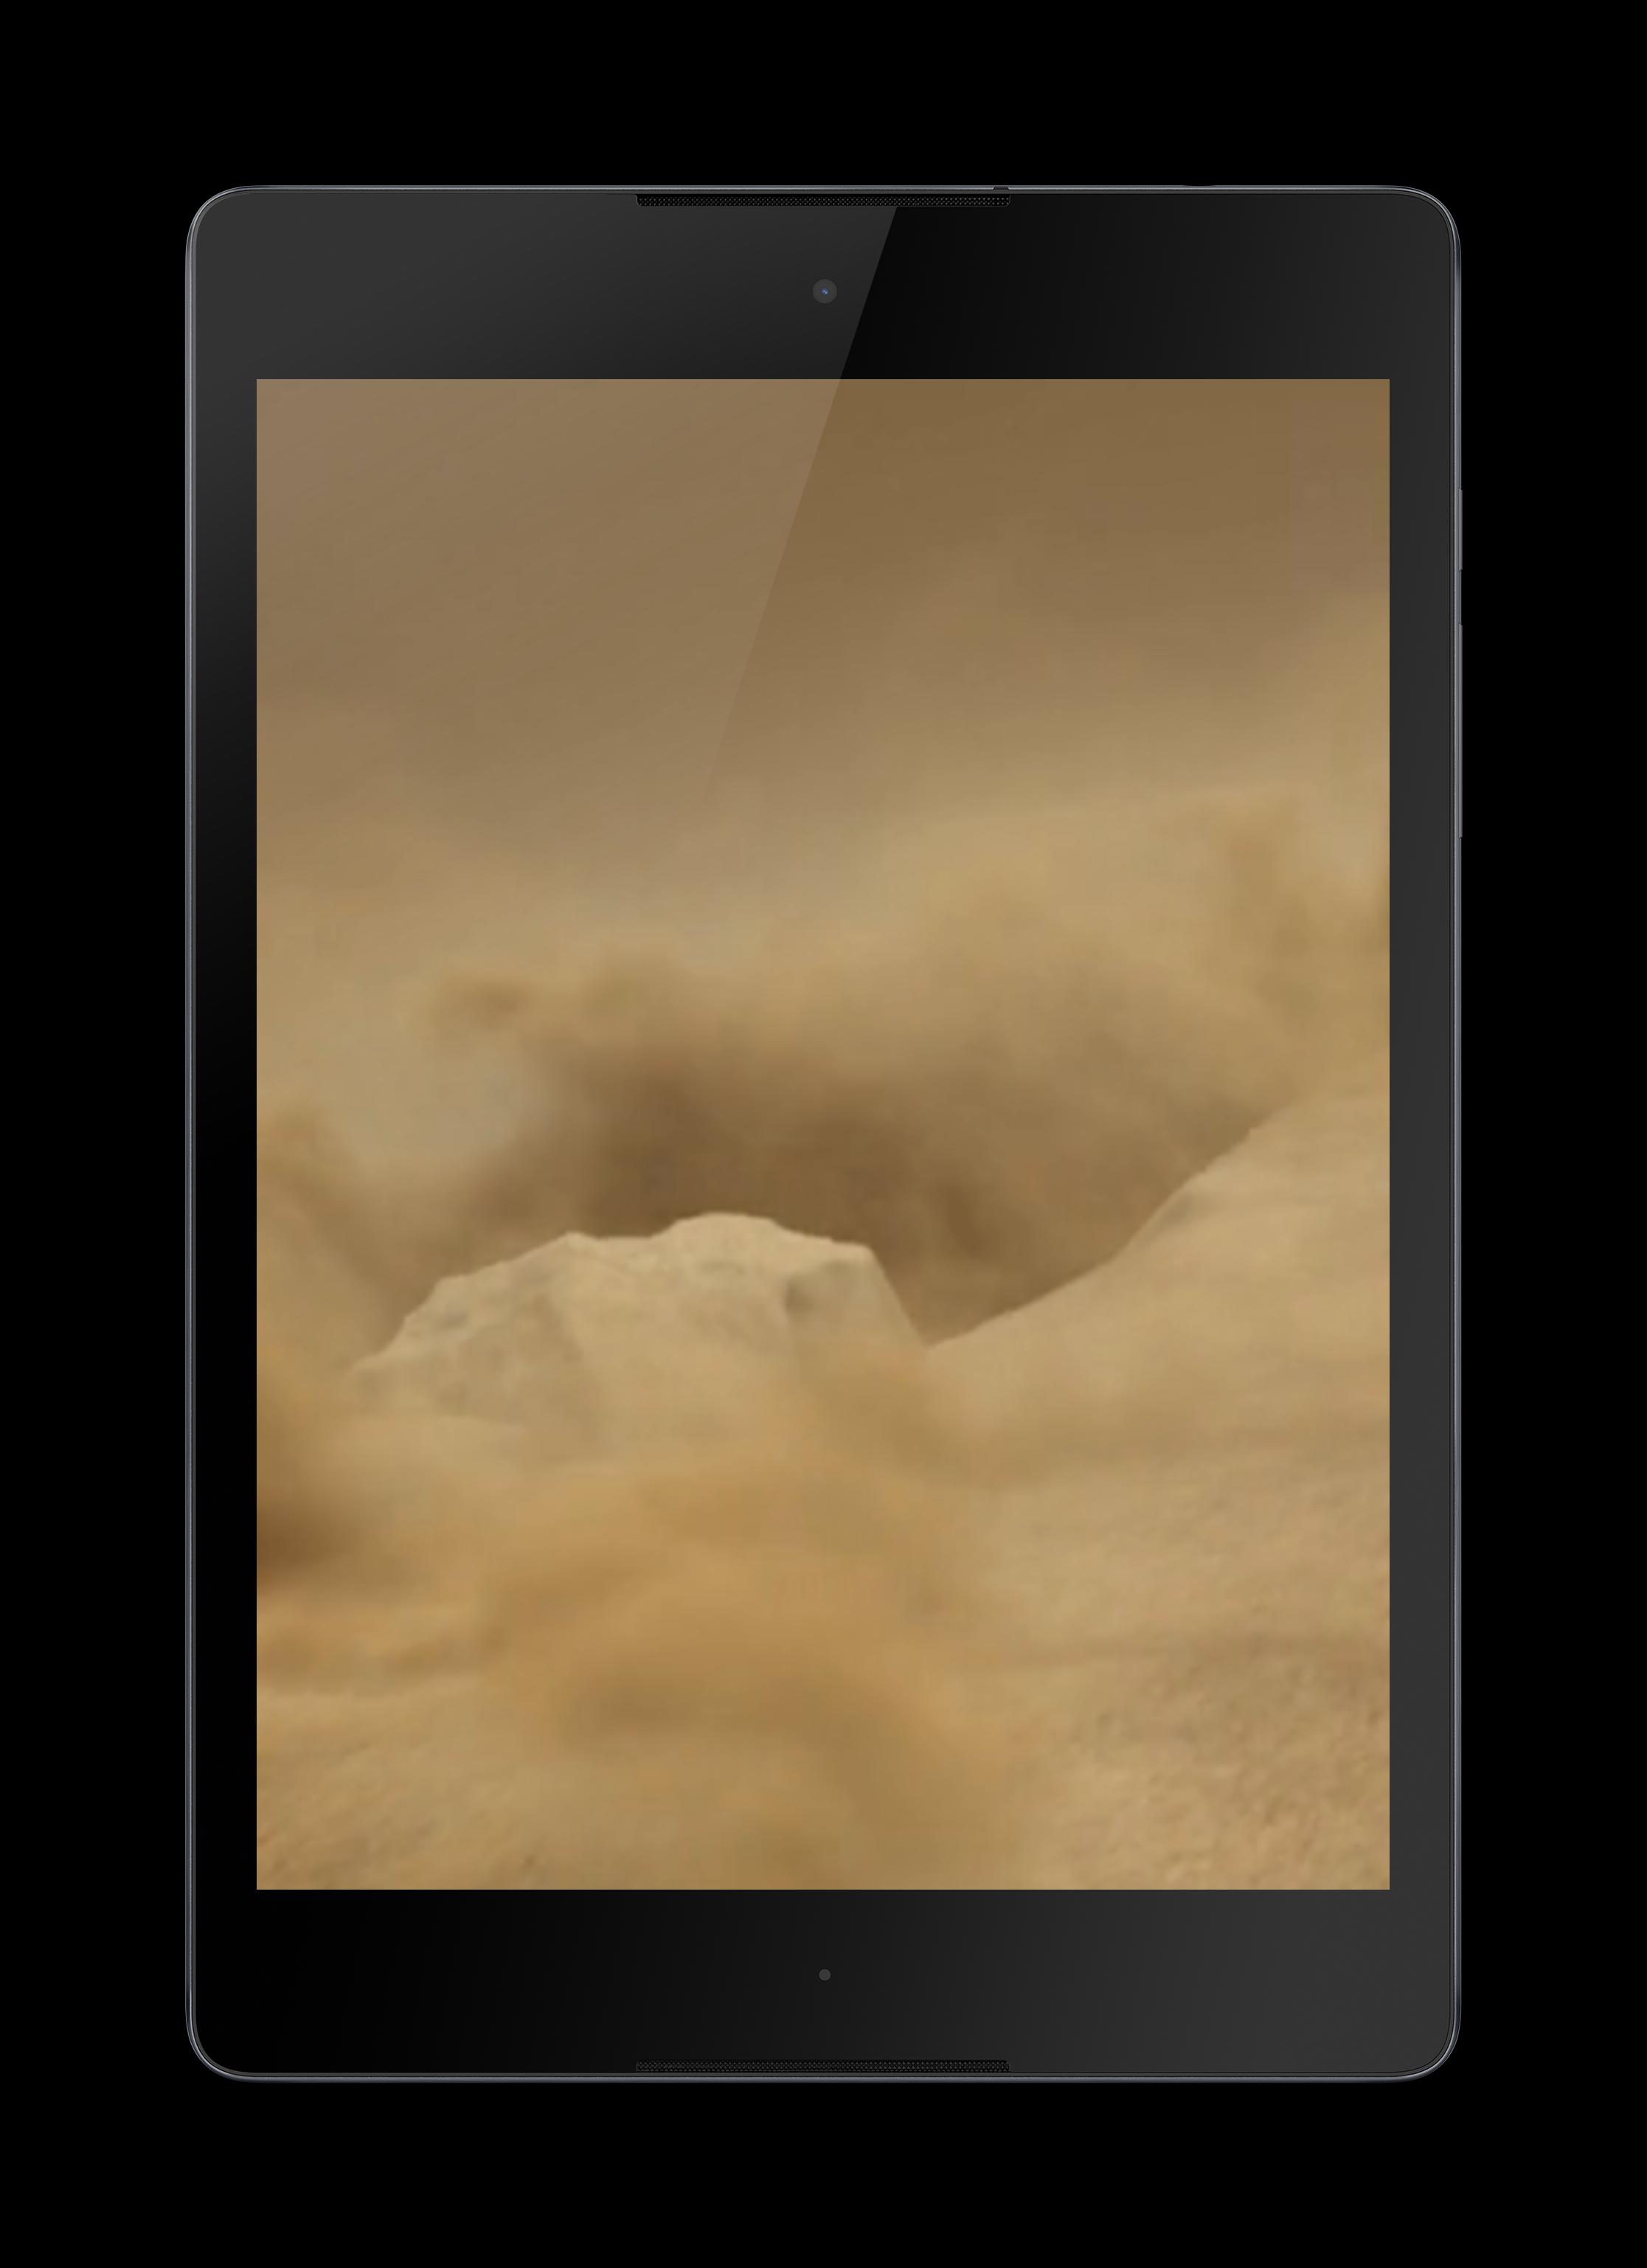 Android 用の 砂漠のライブ壁紙 Apk をダウンロード